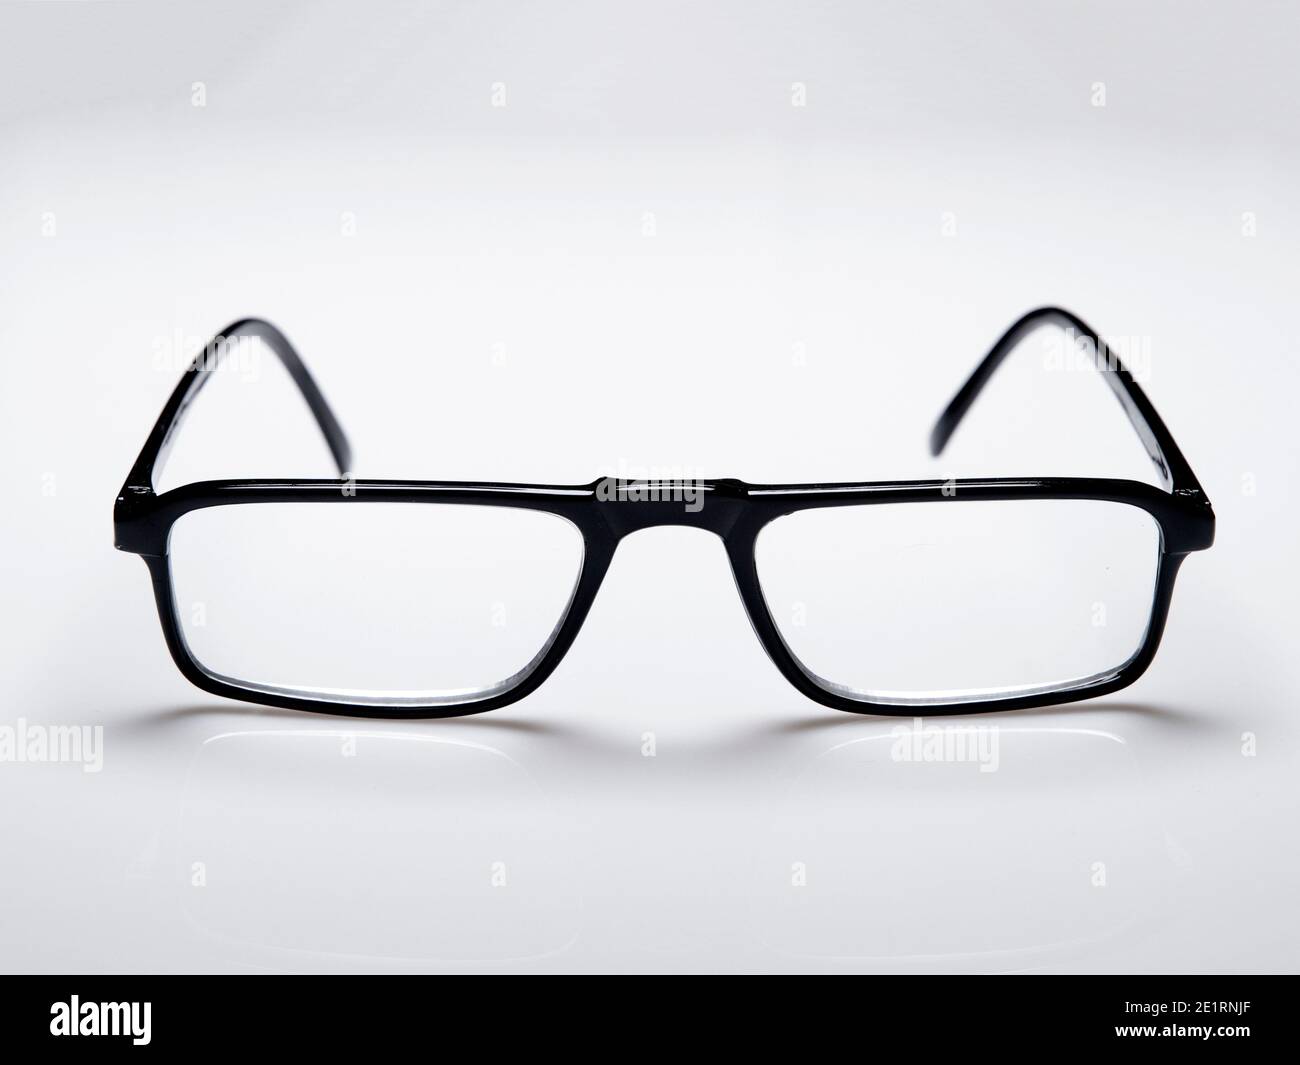 Eyeglasses with black frame isolated on white background Stock Photo